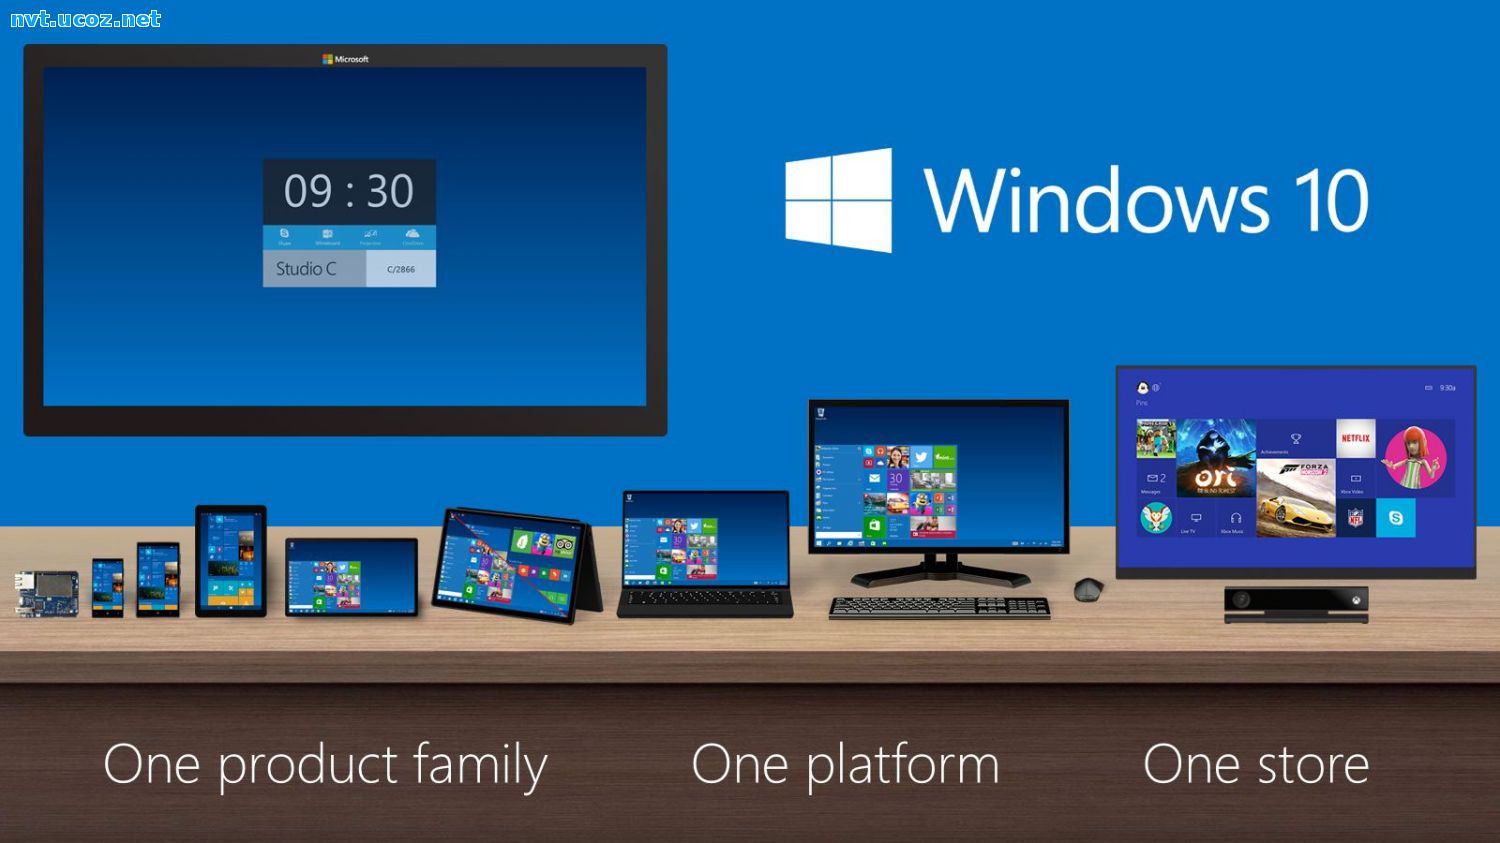 <p>Hướng dẫn tải bộ cài Windows 10 bằng tool của Microsoft. Tốc độ tải Windows 10 về cũng nhanh lắm đó nhưng chỉ hỗ trợ các bản Home, Pro và Single Language.</p>